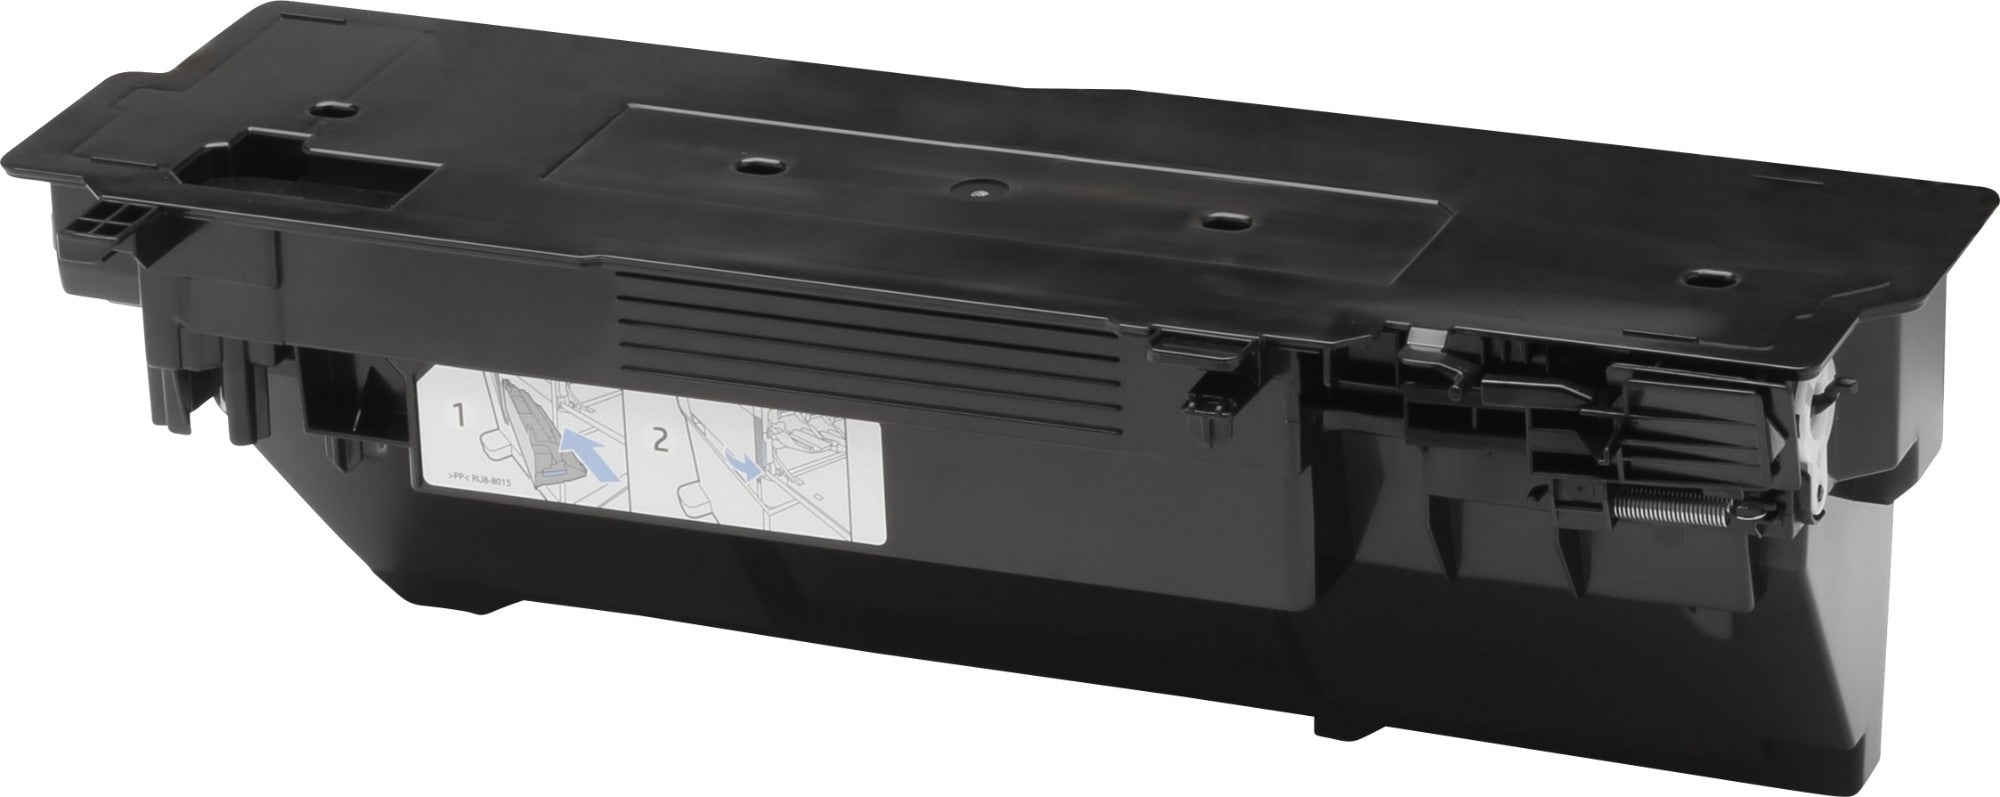 LaserJet 3WT90A Toner Collection Unit